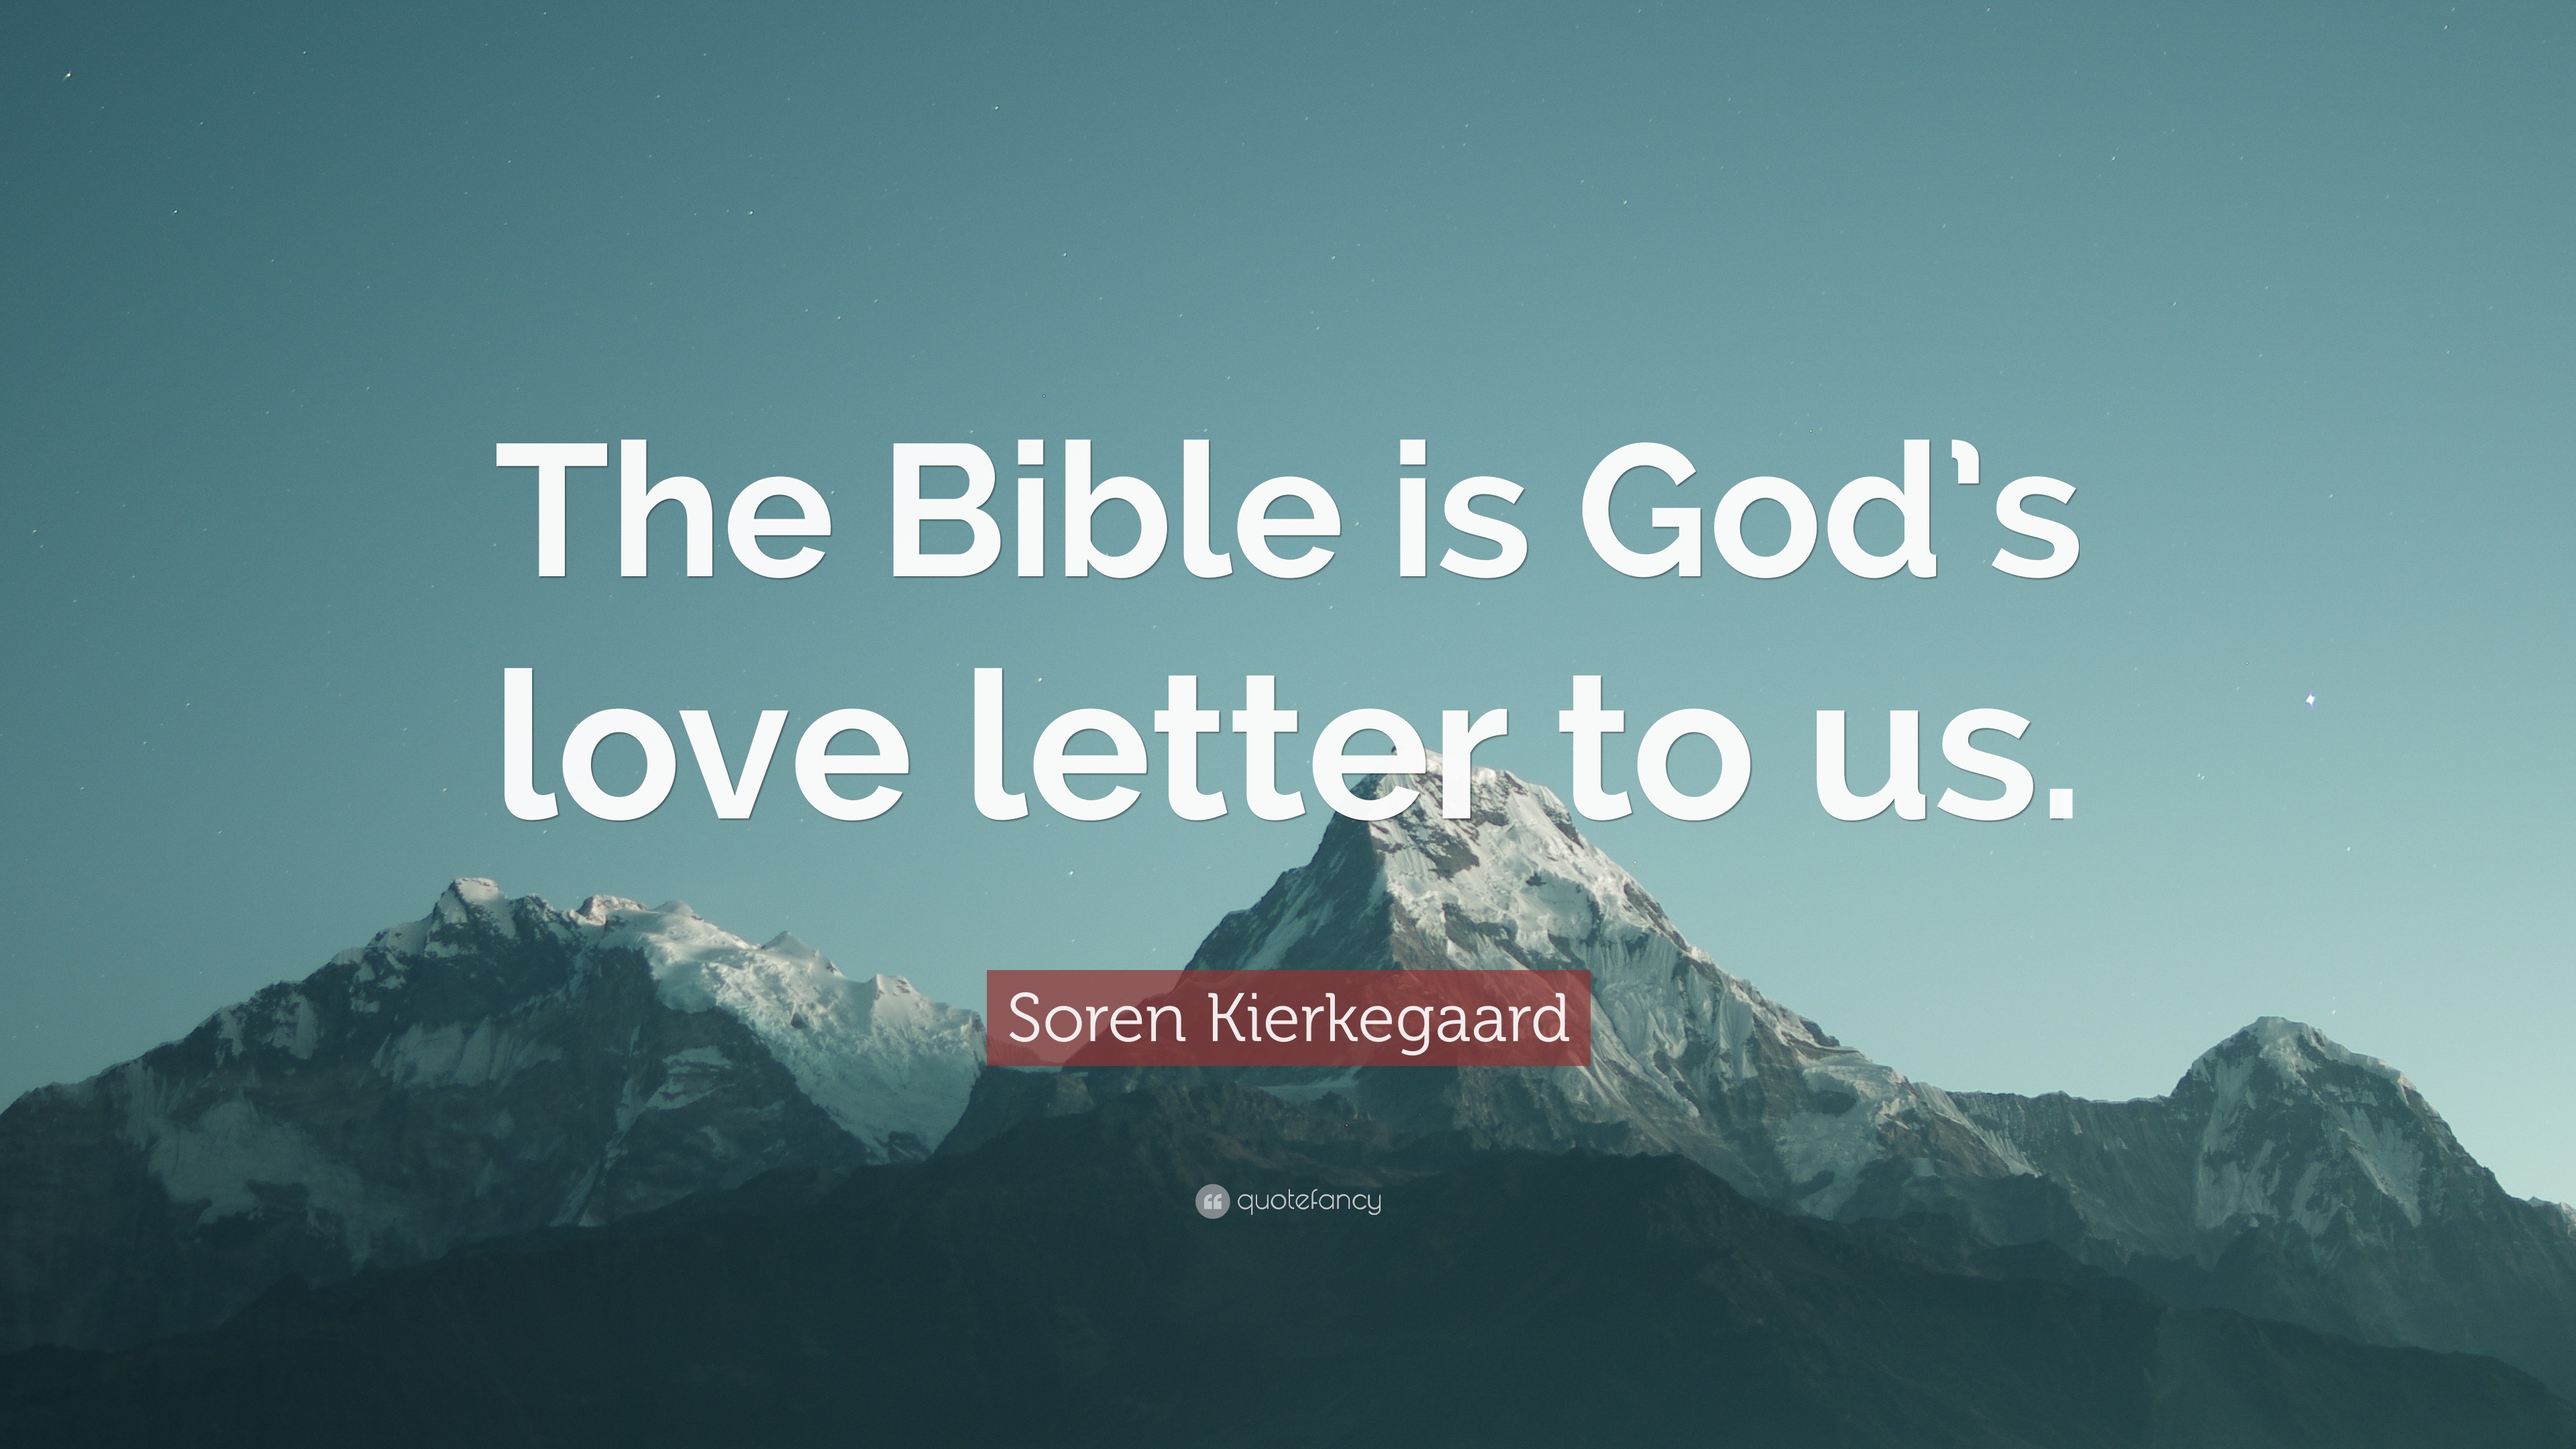 Soren Kierkegaard Quote “The Bible is God s love letter to us ”